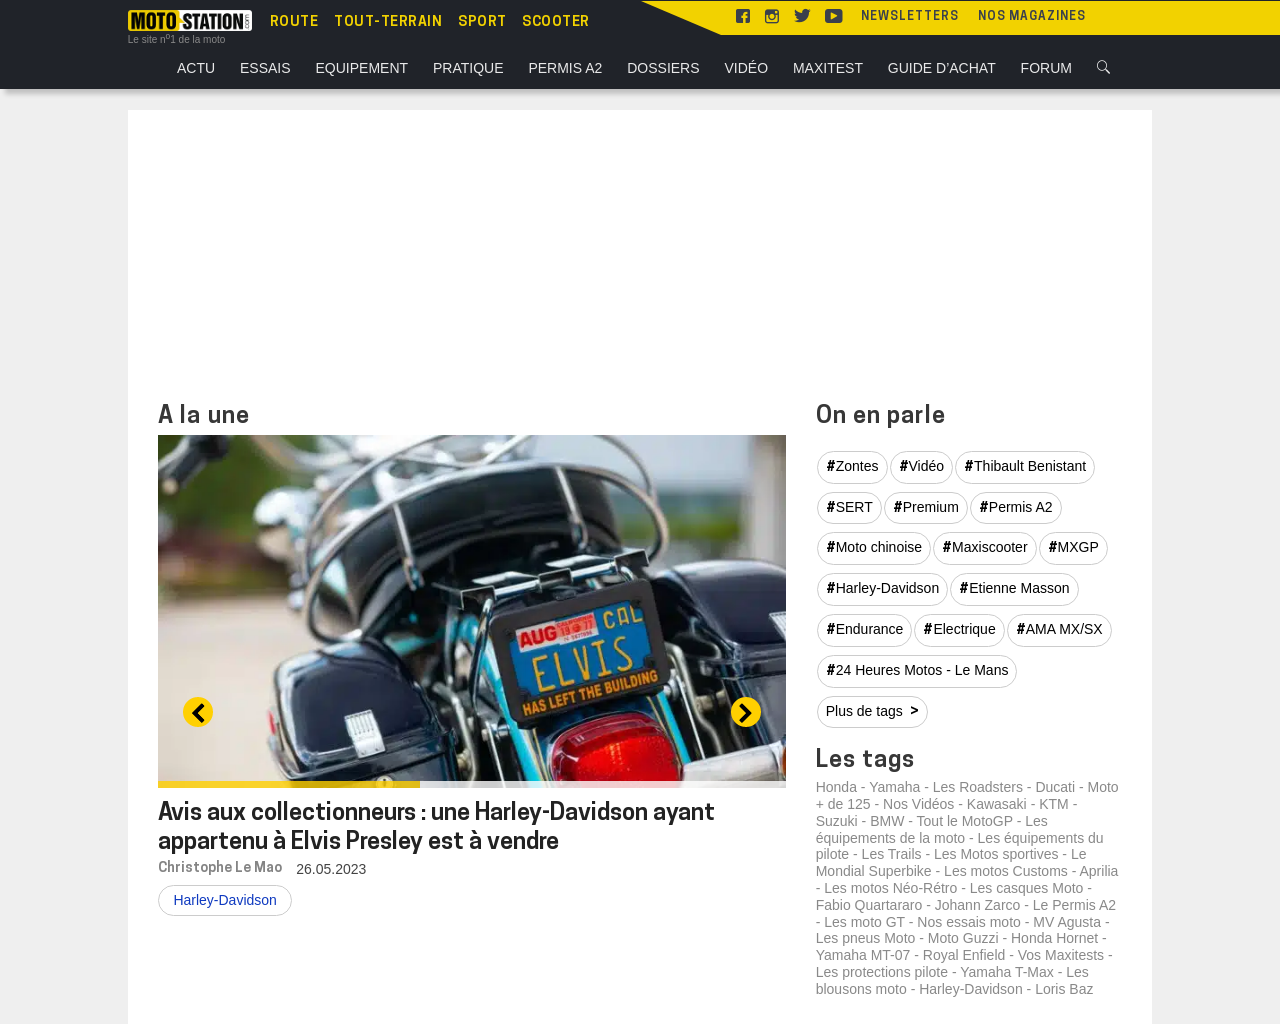 www.moto-journal.fr